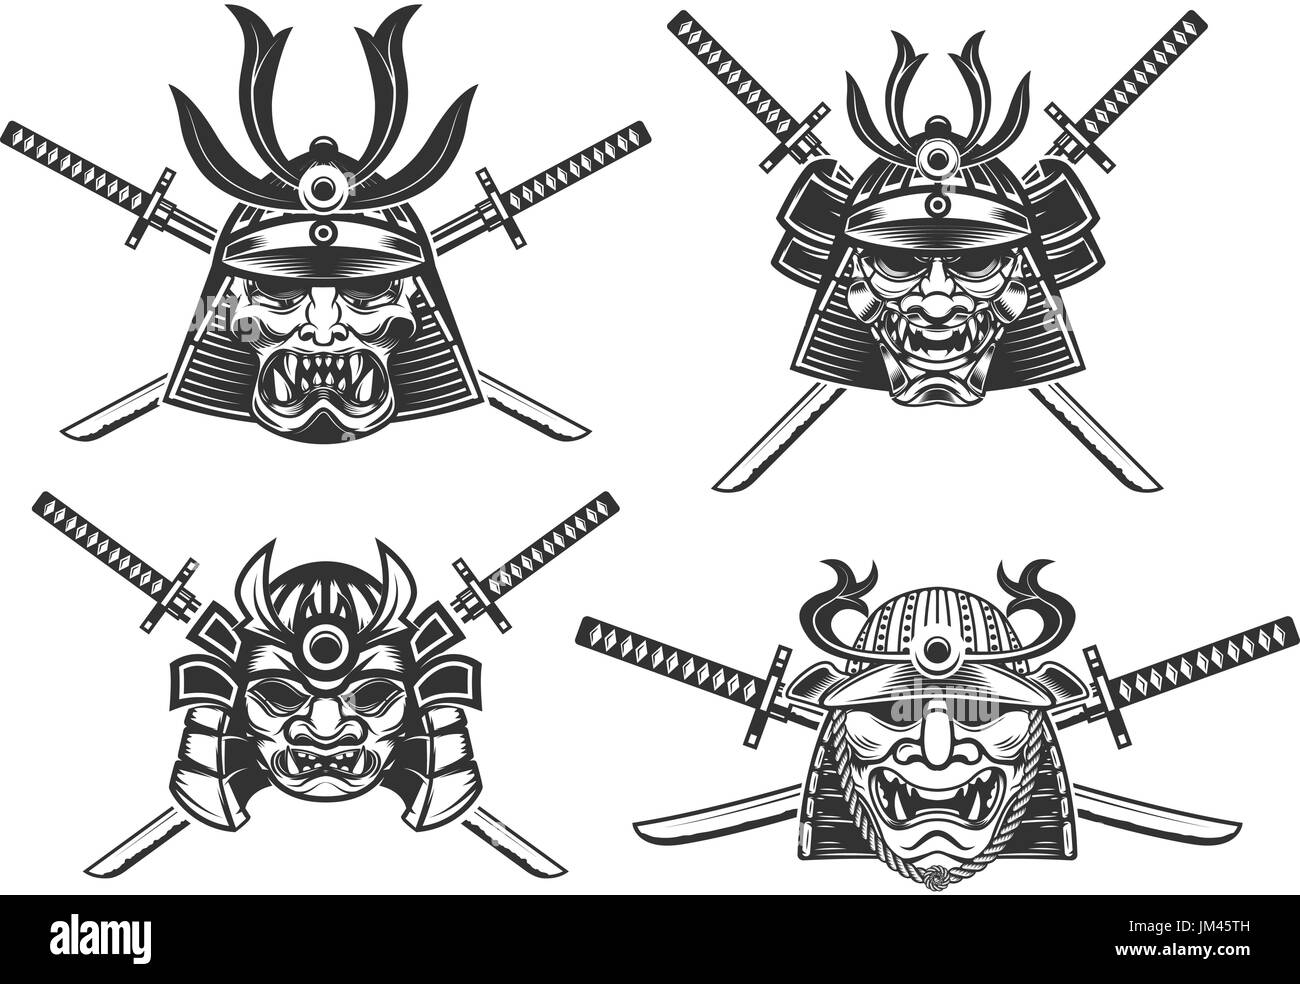 L'ensemble des casques avec des épées samouraï isolé sur fond blanc. Éléments de conception pour le label, logo, emblème, poster, t-shirt. Vector illustration. Illustration de Vecteur